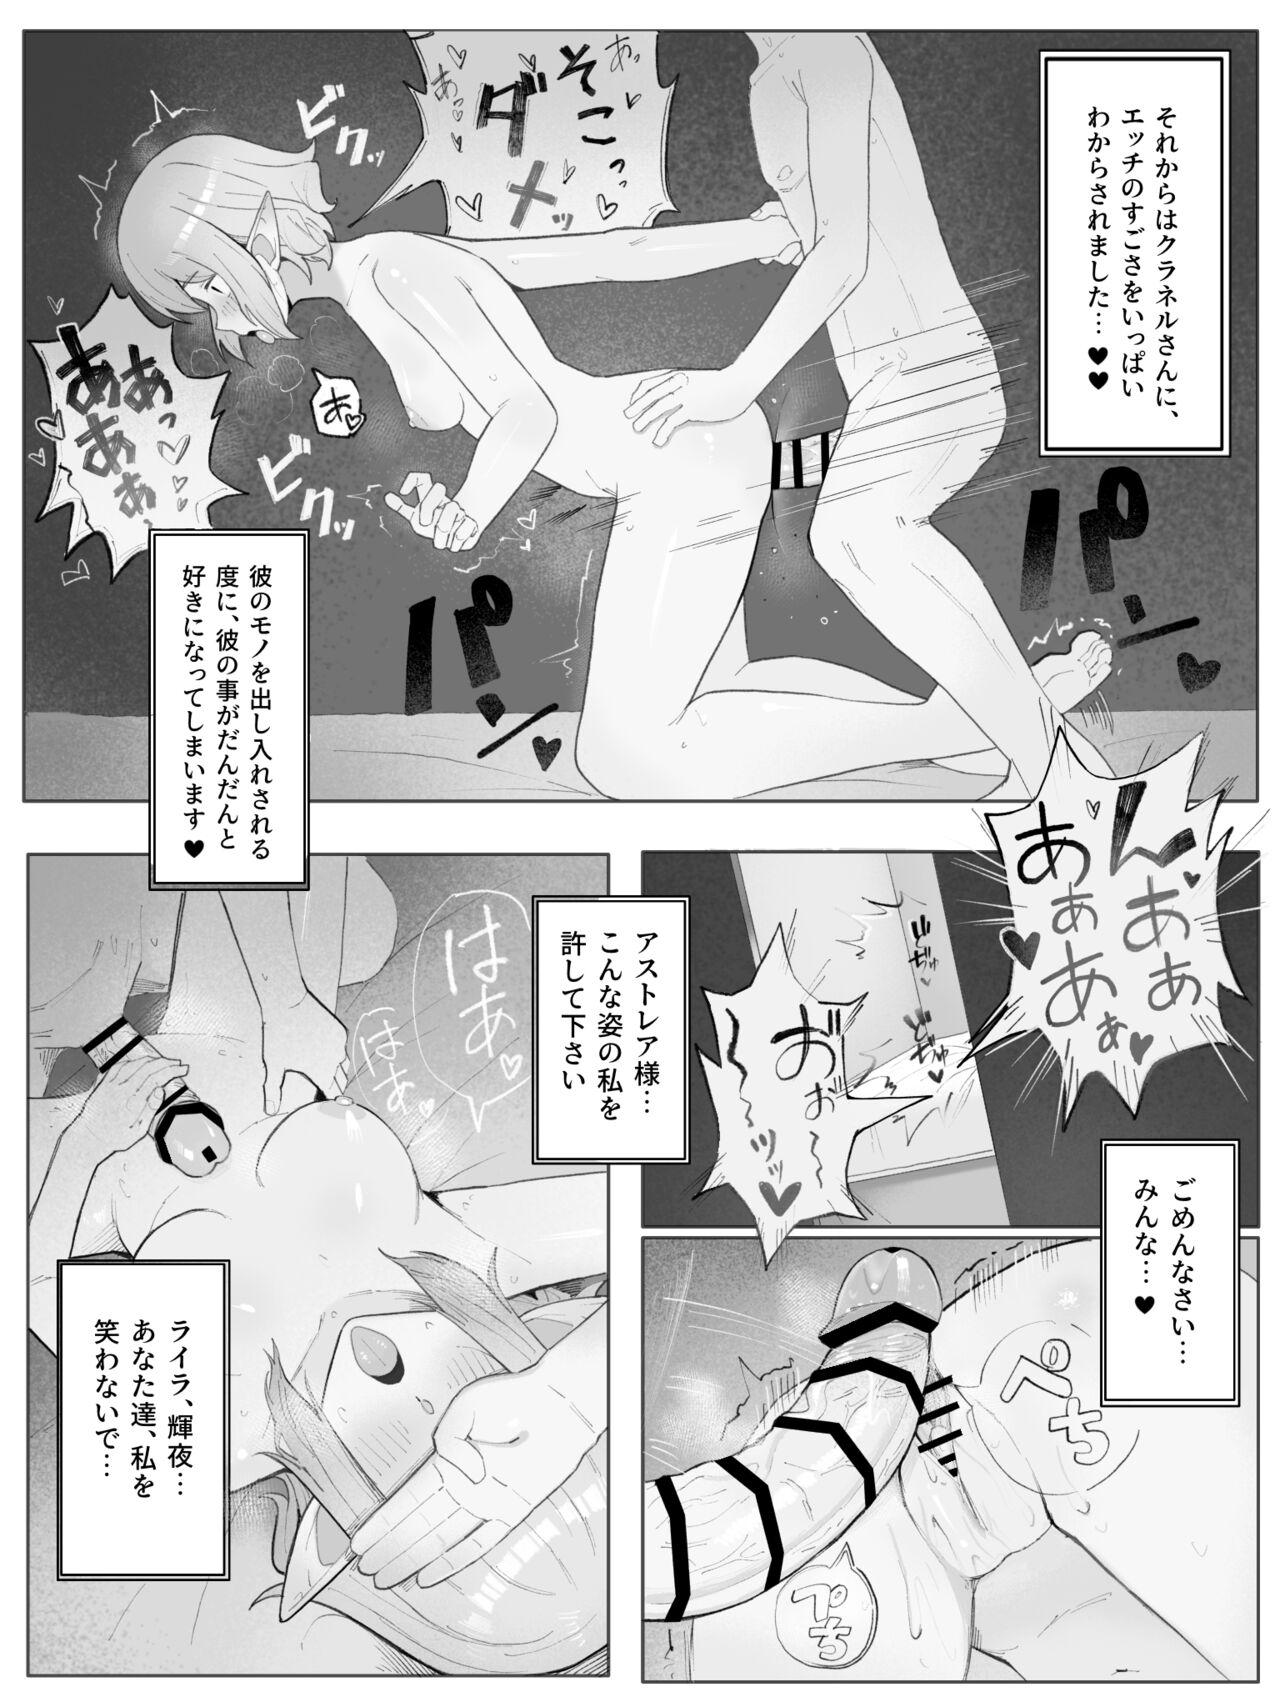 Cumfacial Bell Ryuu Ecchi na Manga - Dungeon ni deai o motomeru no wa machigatteiru darou ka Maduro - Page 11